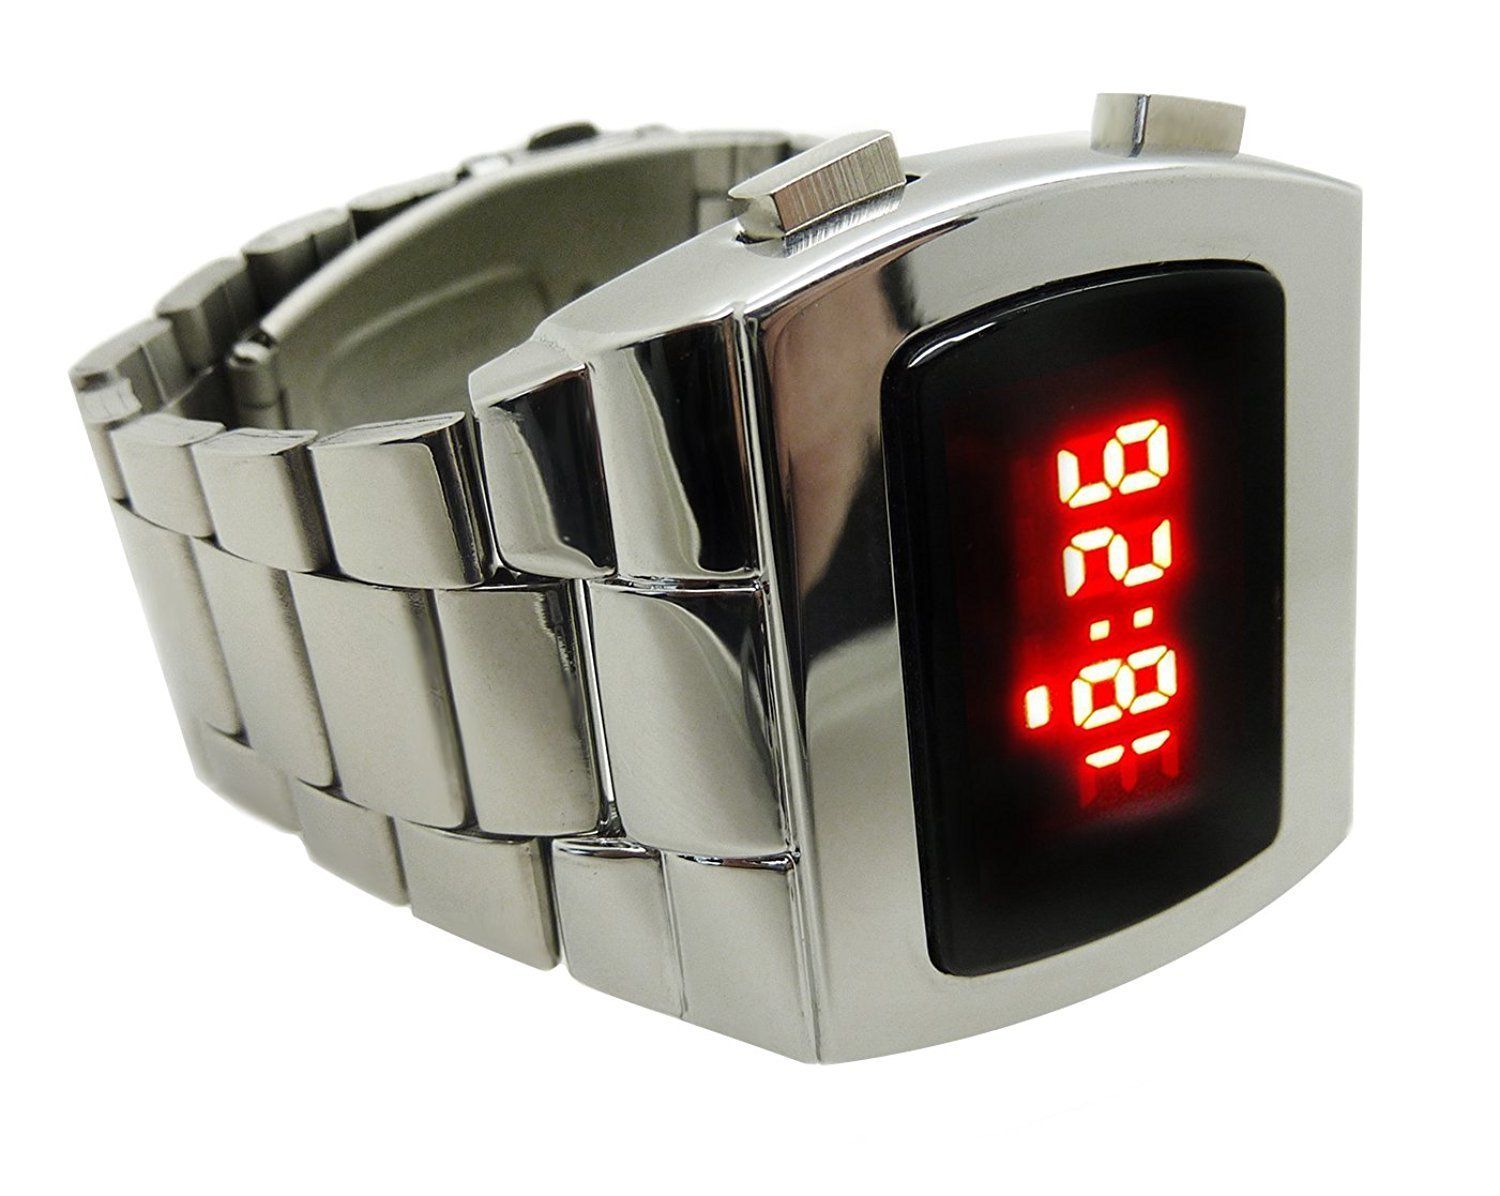 Часы led watch. Часы лед вотч. Quicksilver Kit Metal, m094dm, led часы. Led watch часы 1354. Светодиодные часы ДЖИЭСЭС 2874.